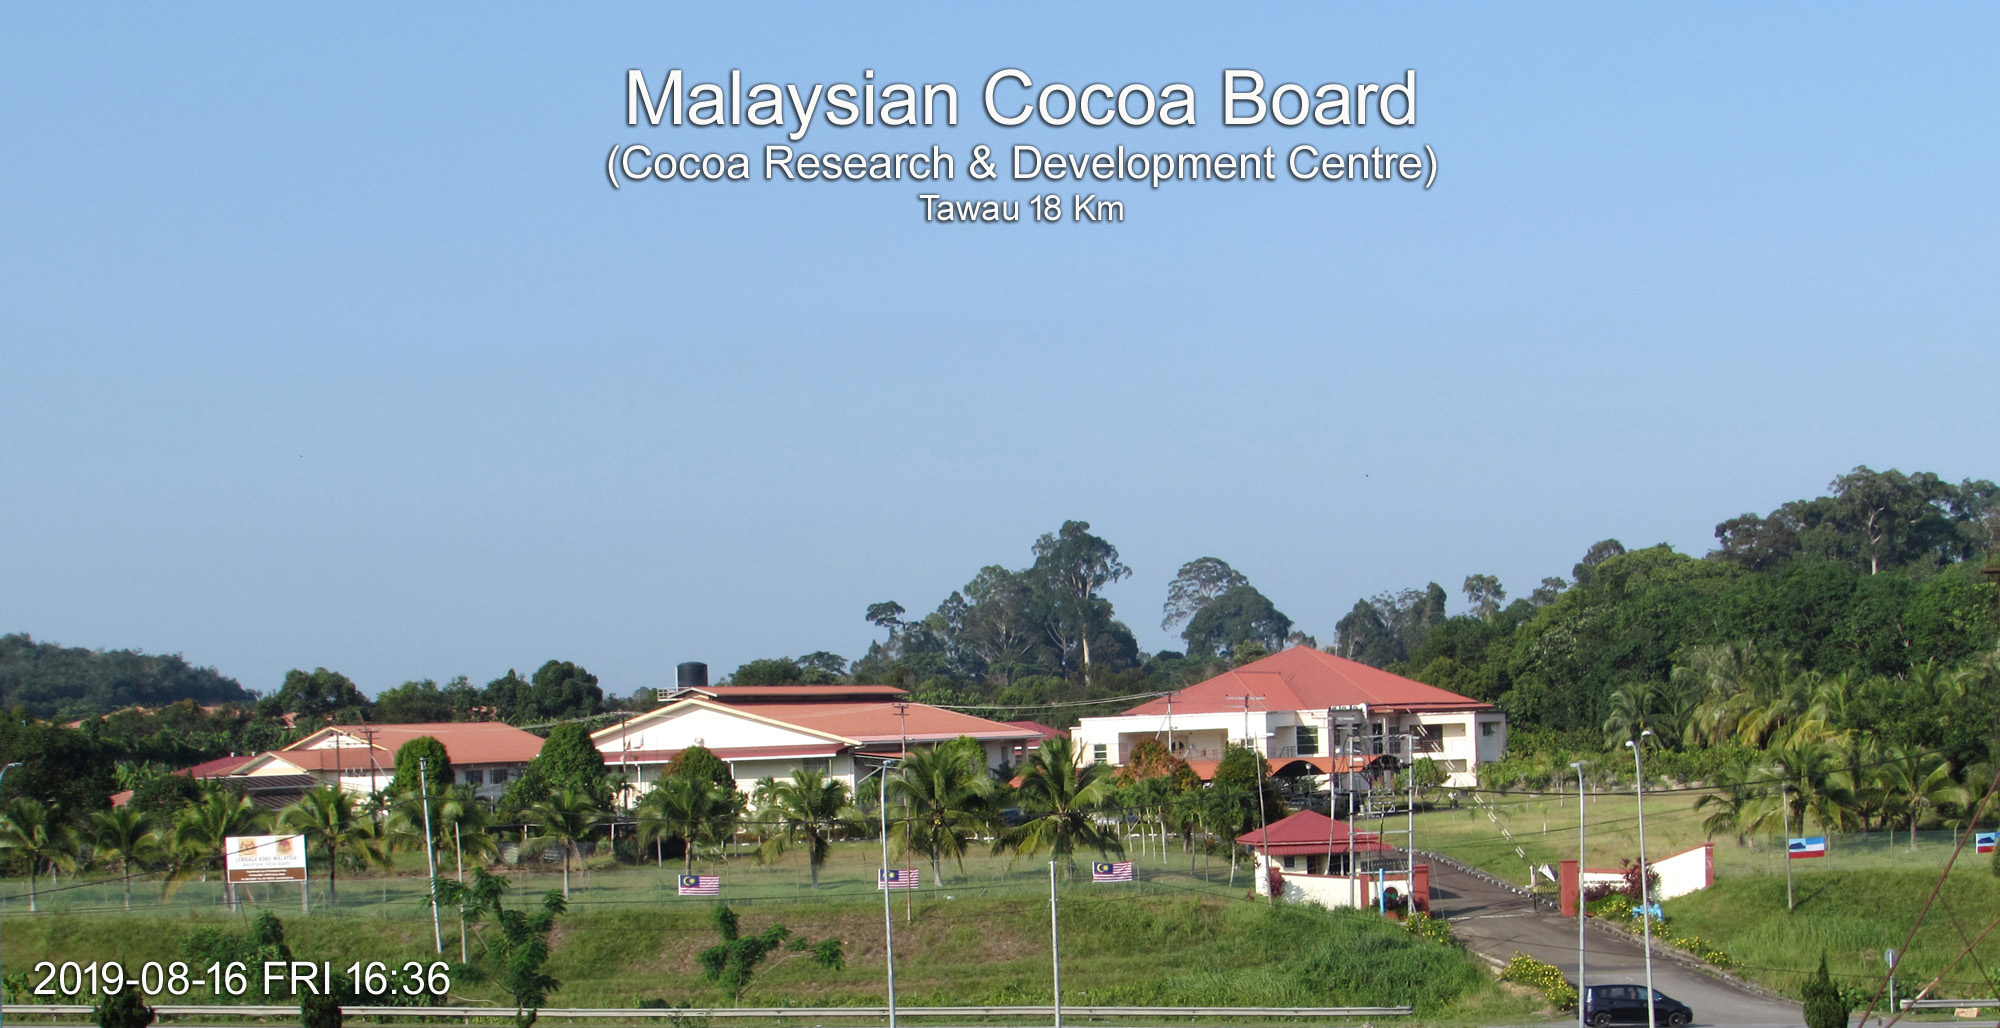 Malaysian Cocoa Board (Cocoa Research & Development Centre)